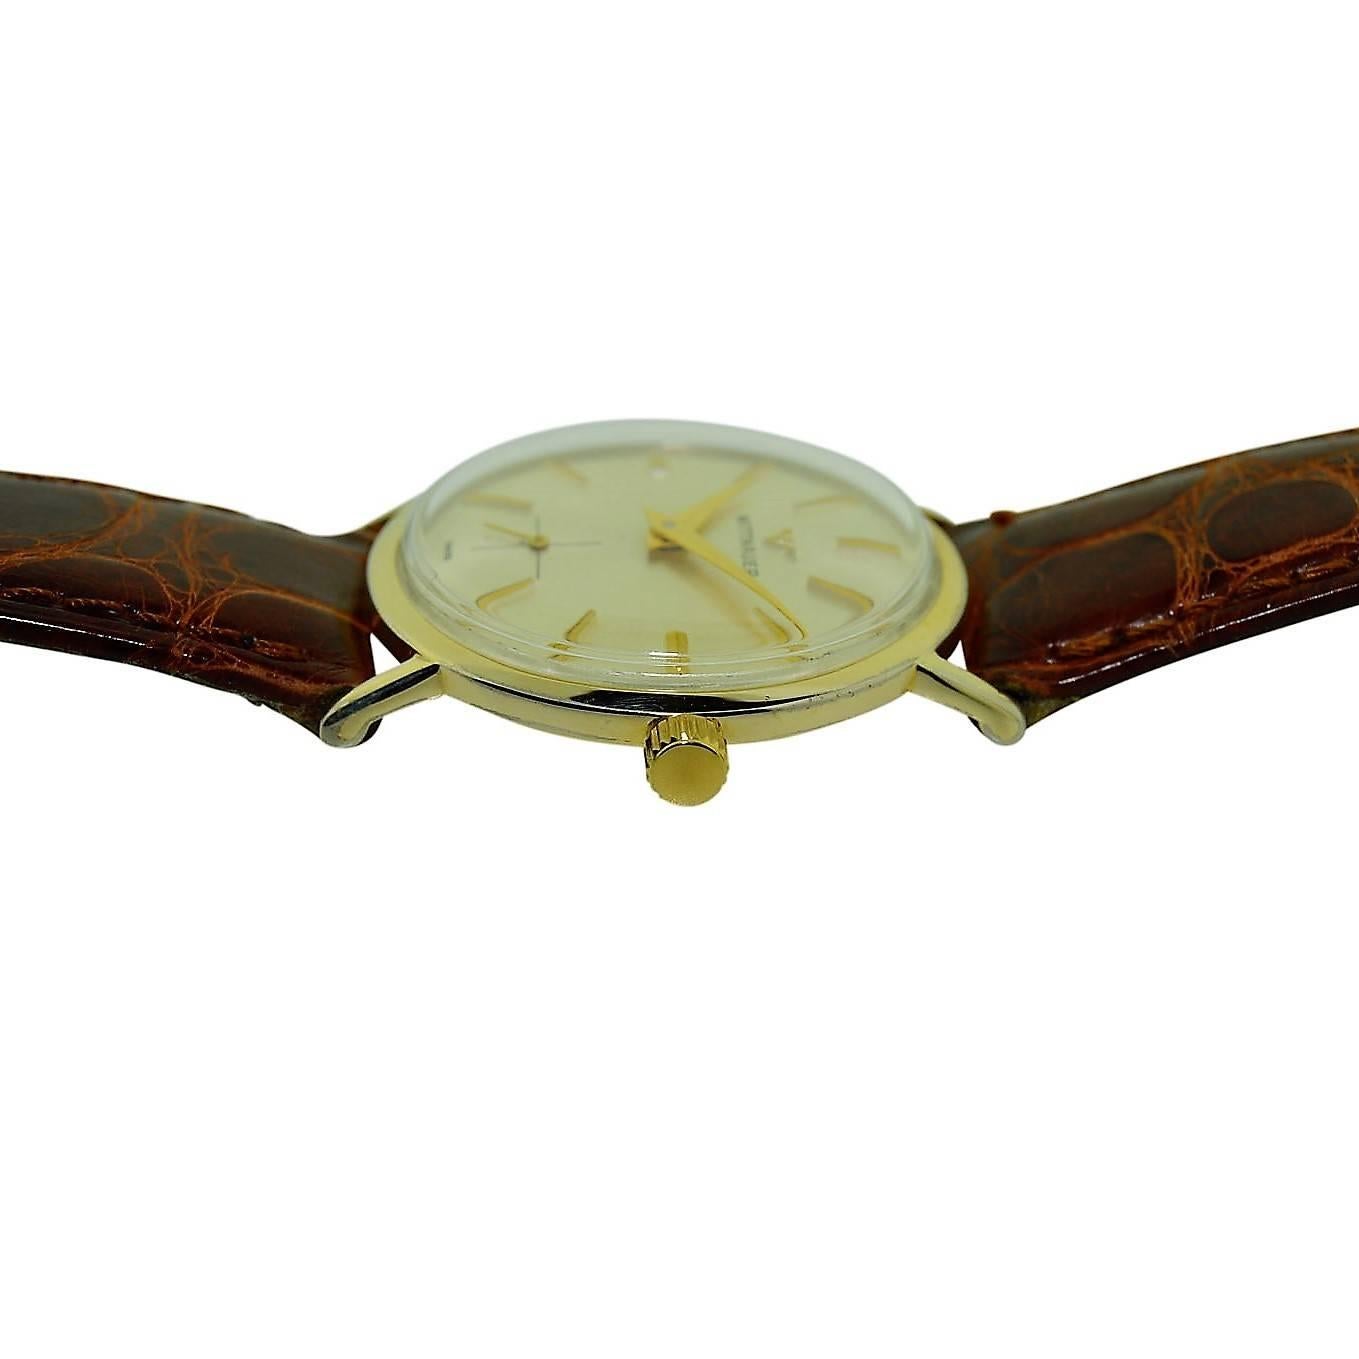 wittnauer watch value